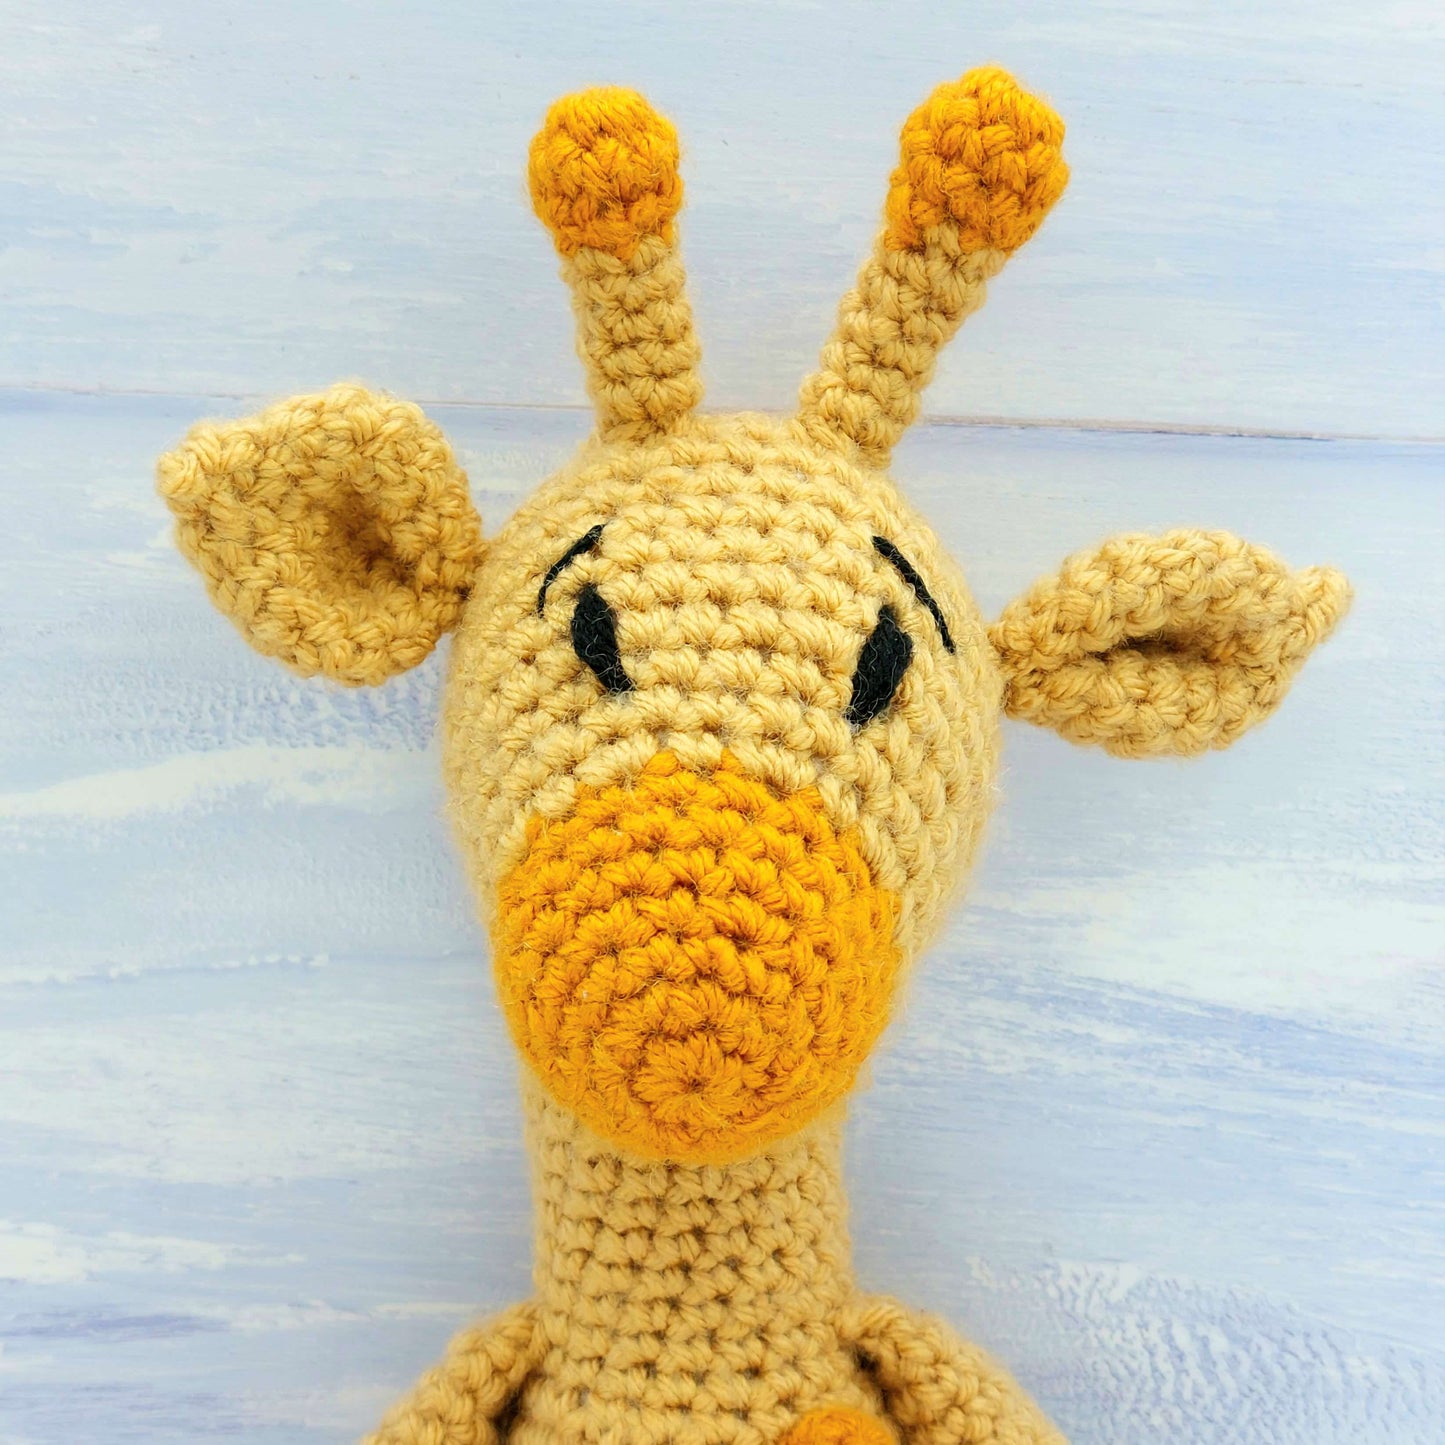 Beginner Crochet Kit - Giraffe Crochet Kit for Beginners